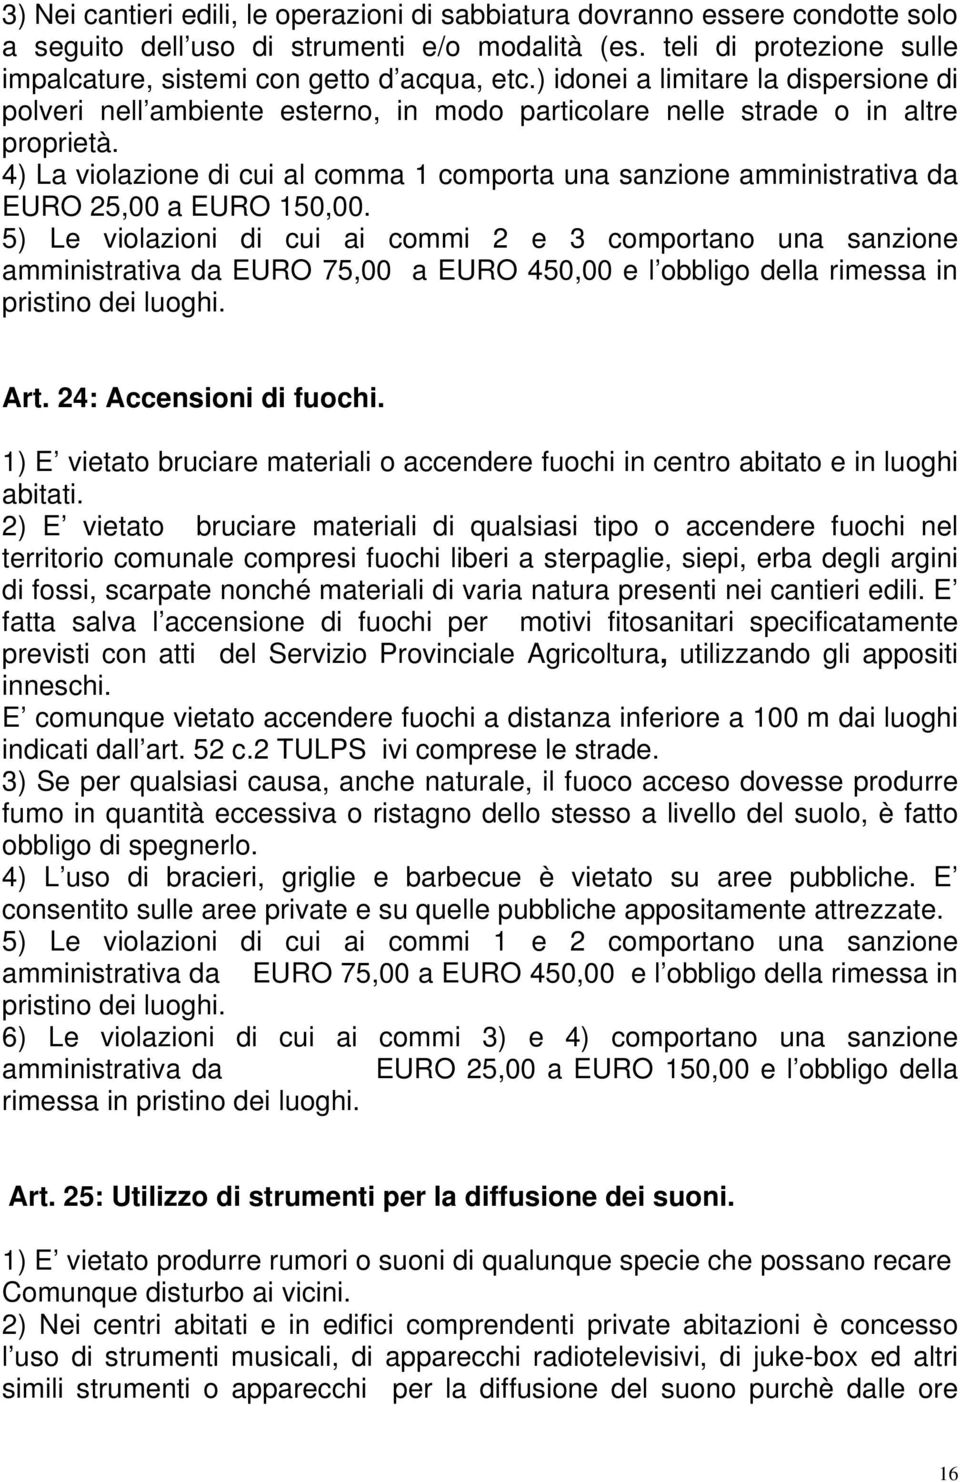 4) La violazione di cui al comma 1 comporta una sanzione amministrativa da EURO 25,00 a EURO 150,00.